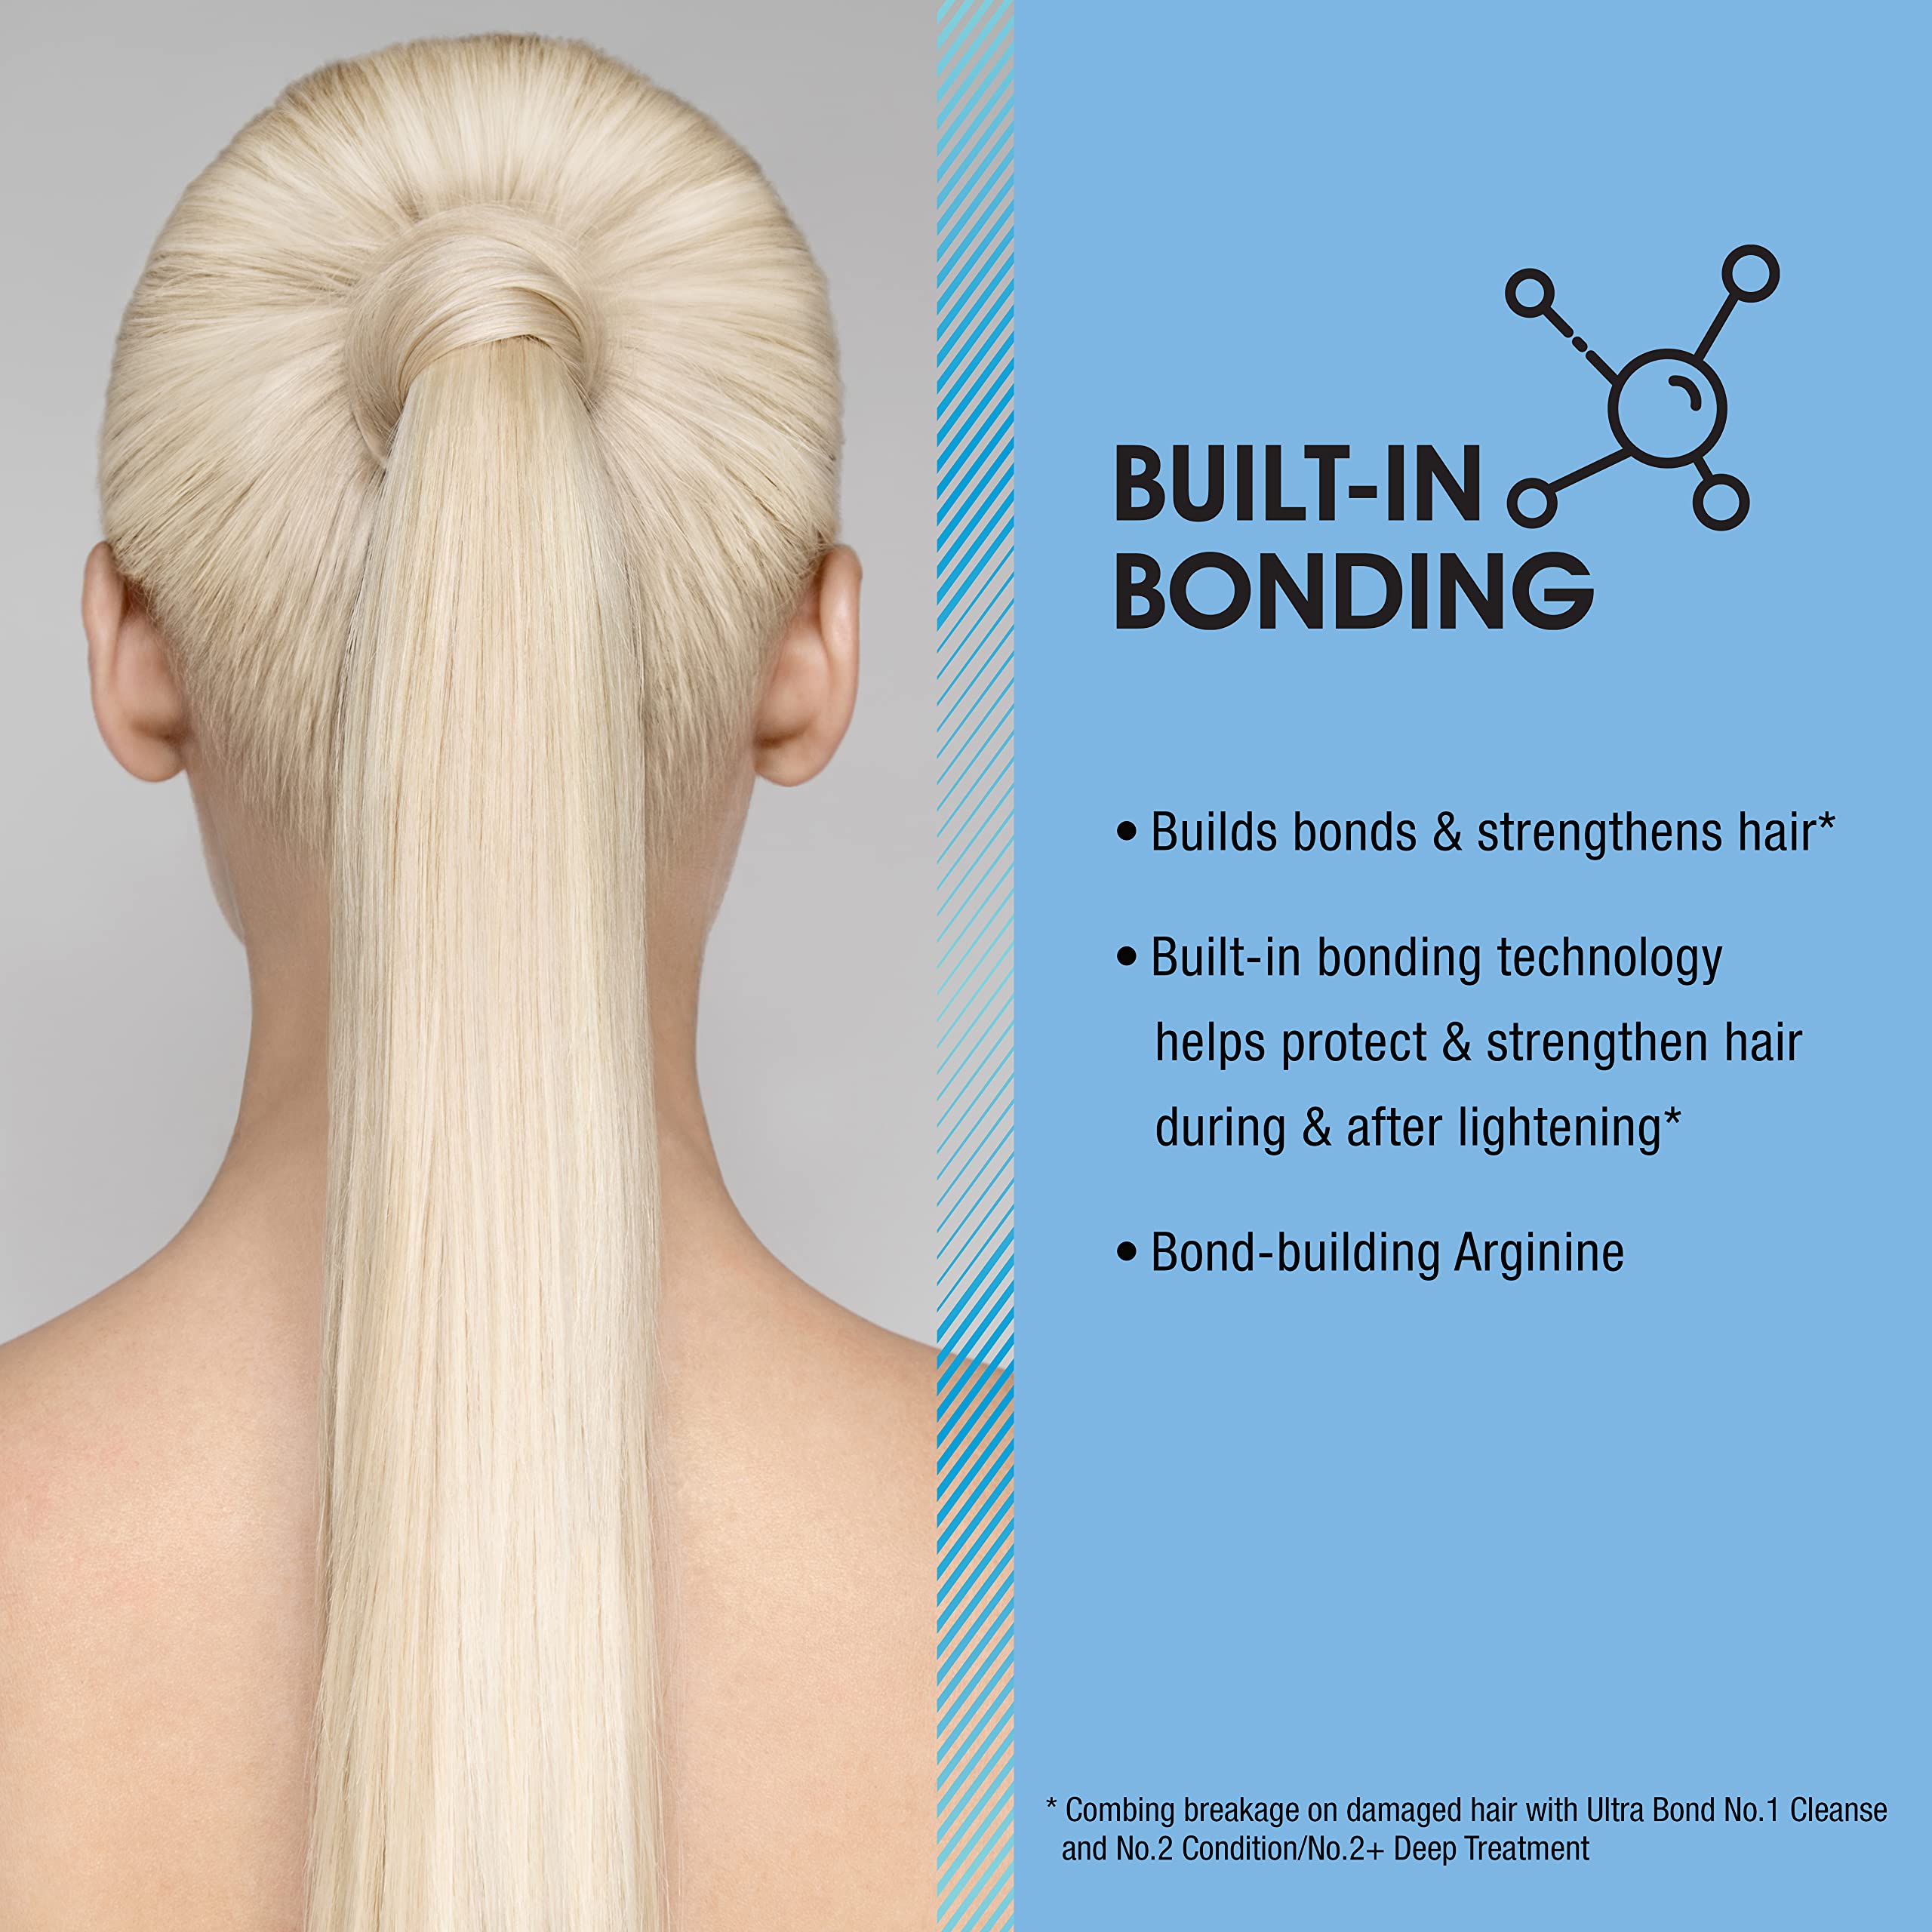 Ultra Bond Synergy Shampoo (No 1), Conditioner (No 2) and Deep Treatment (No 2+) - Strengthens & Protects - Builds Bonds w/Arginine